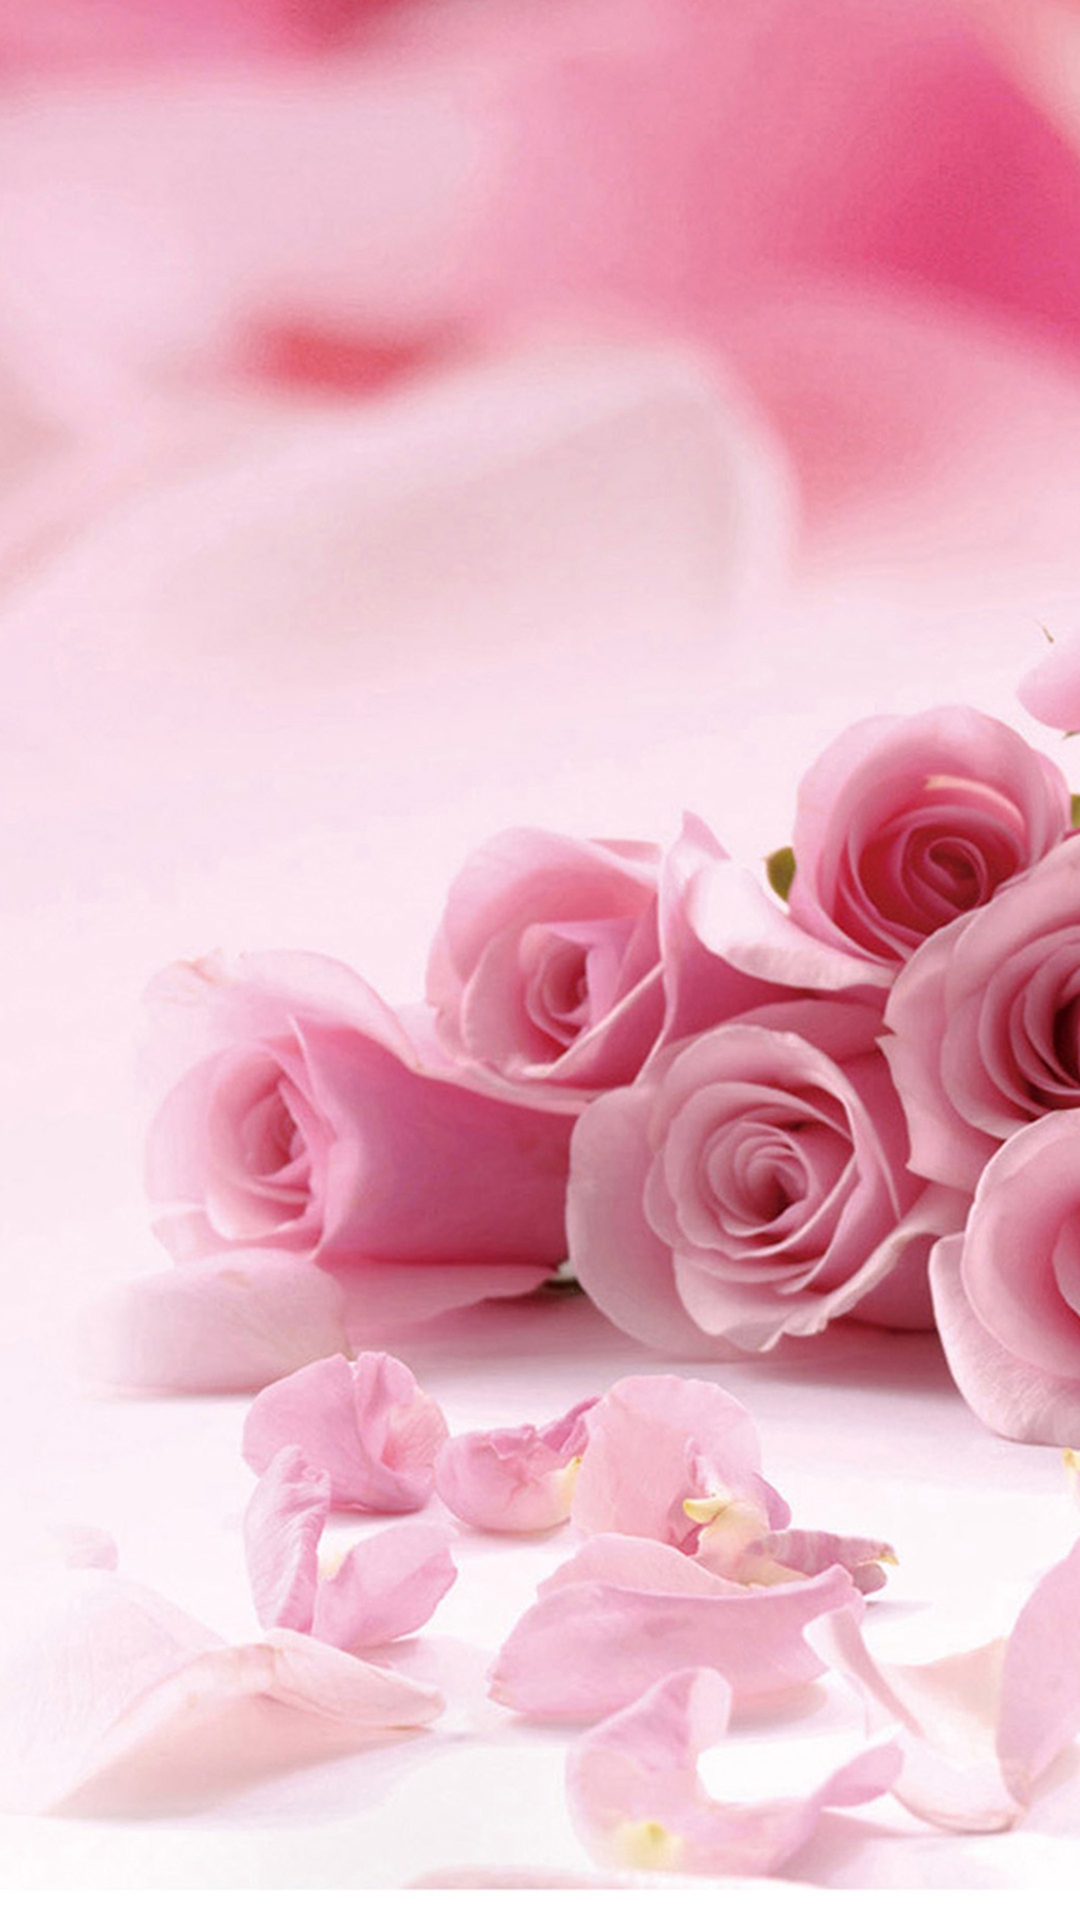 flower theme wallpaper,pink,garden roses,petal,rose,flower